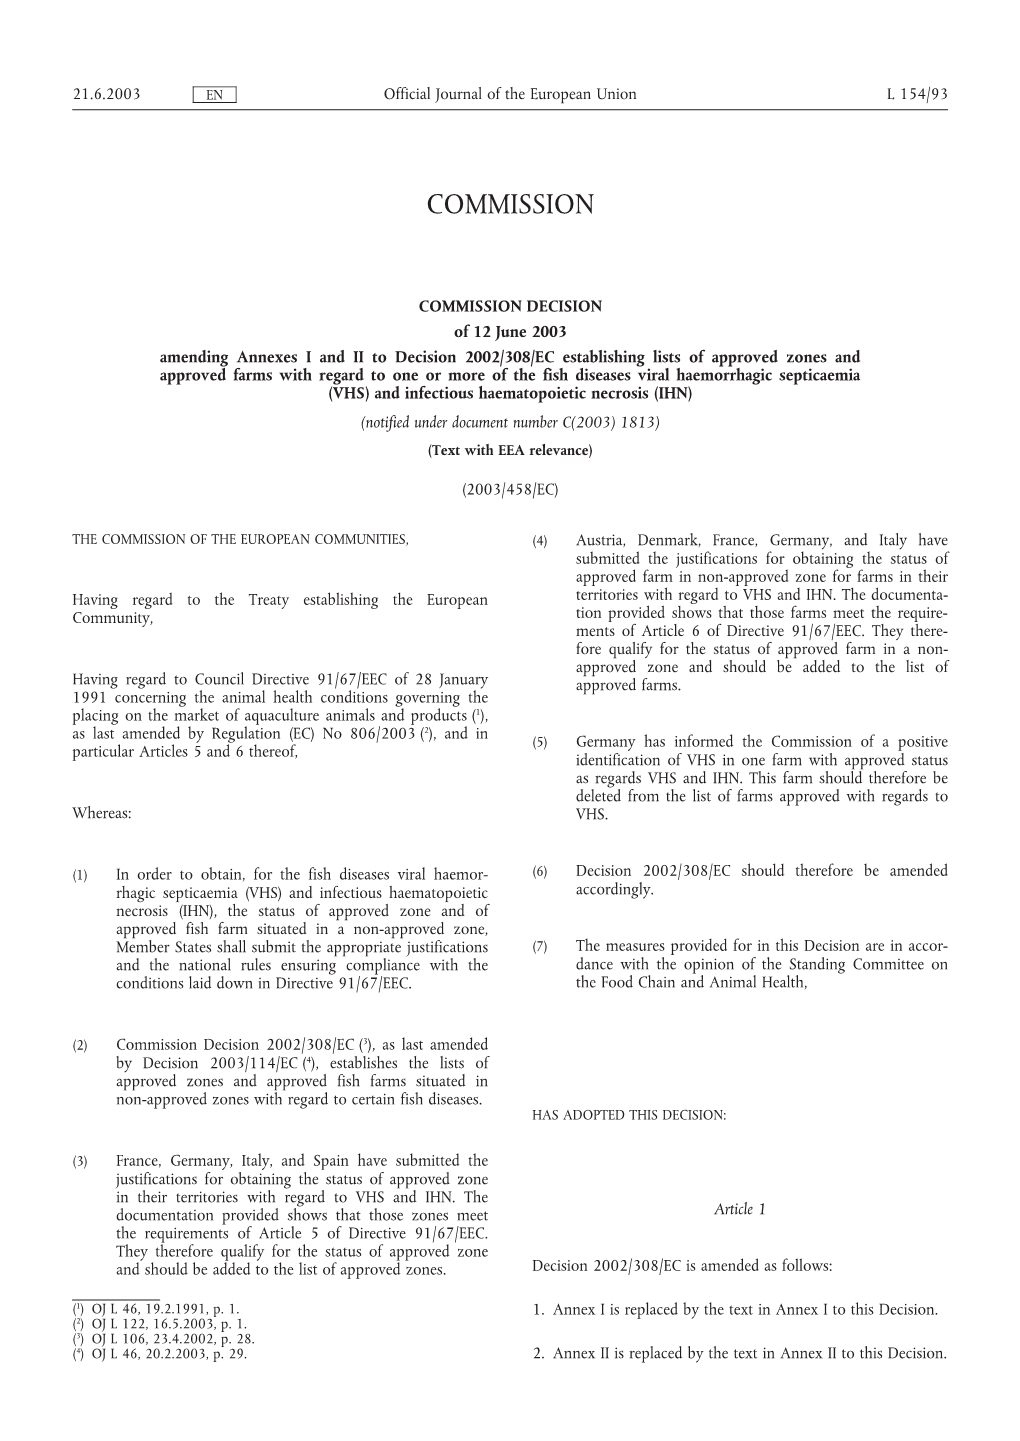 Commission Decision 2003/458/EC Amending Annexes I